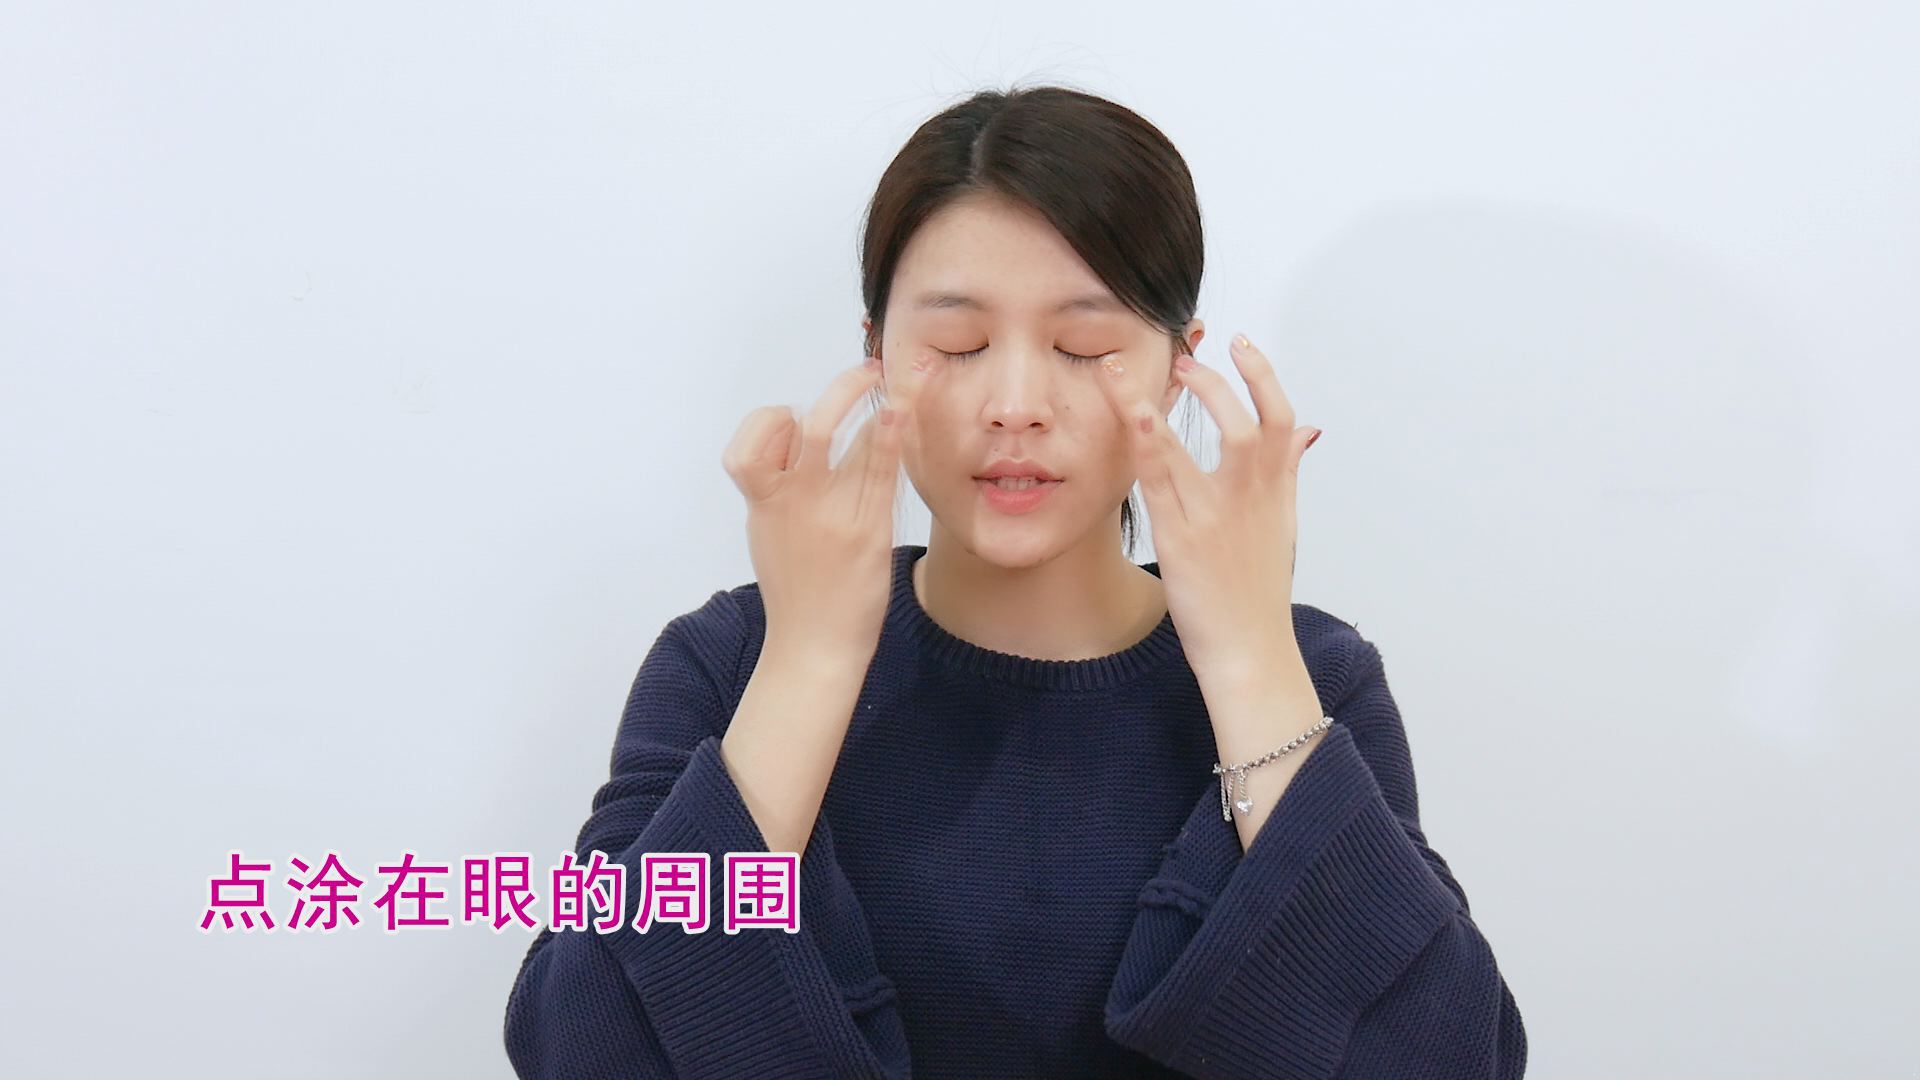 眼霜的正确使用方法视频 手把手教你如何涂眼霜